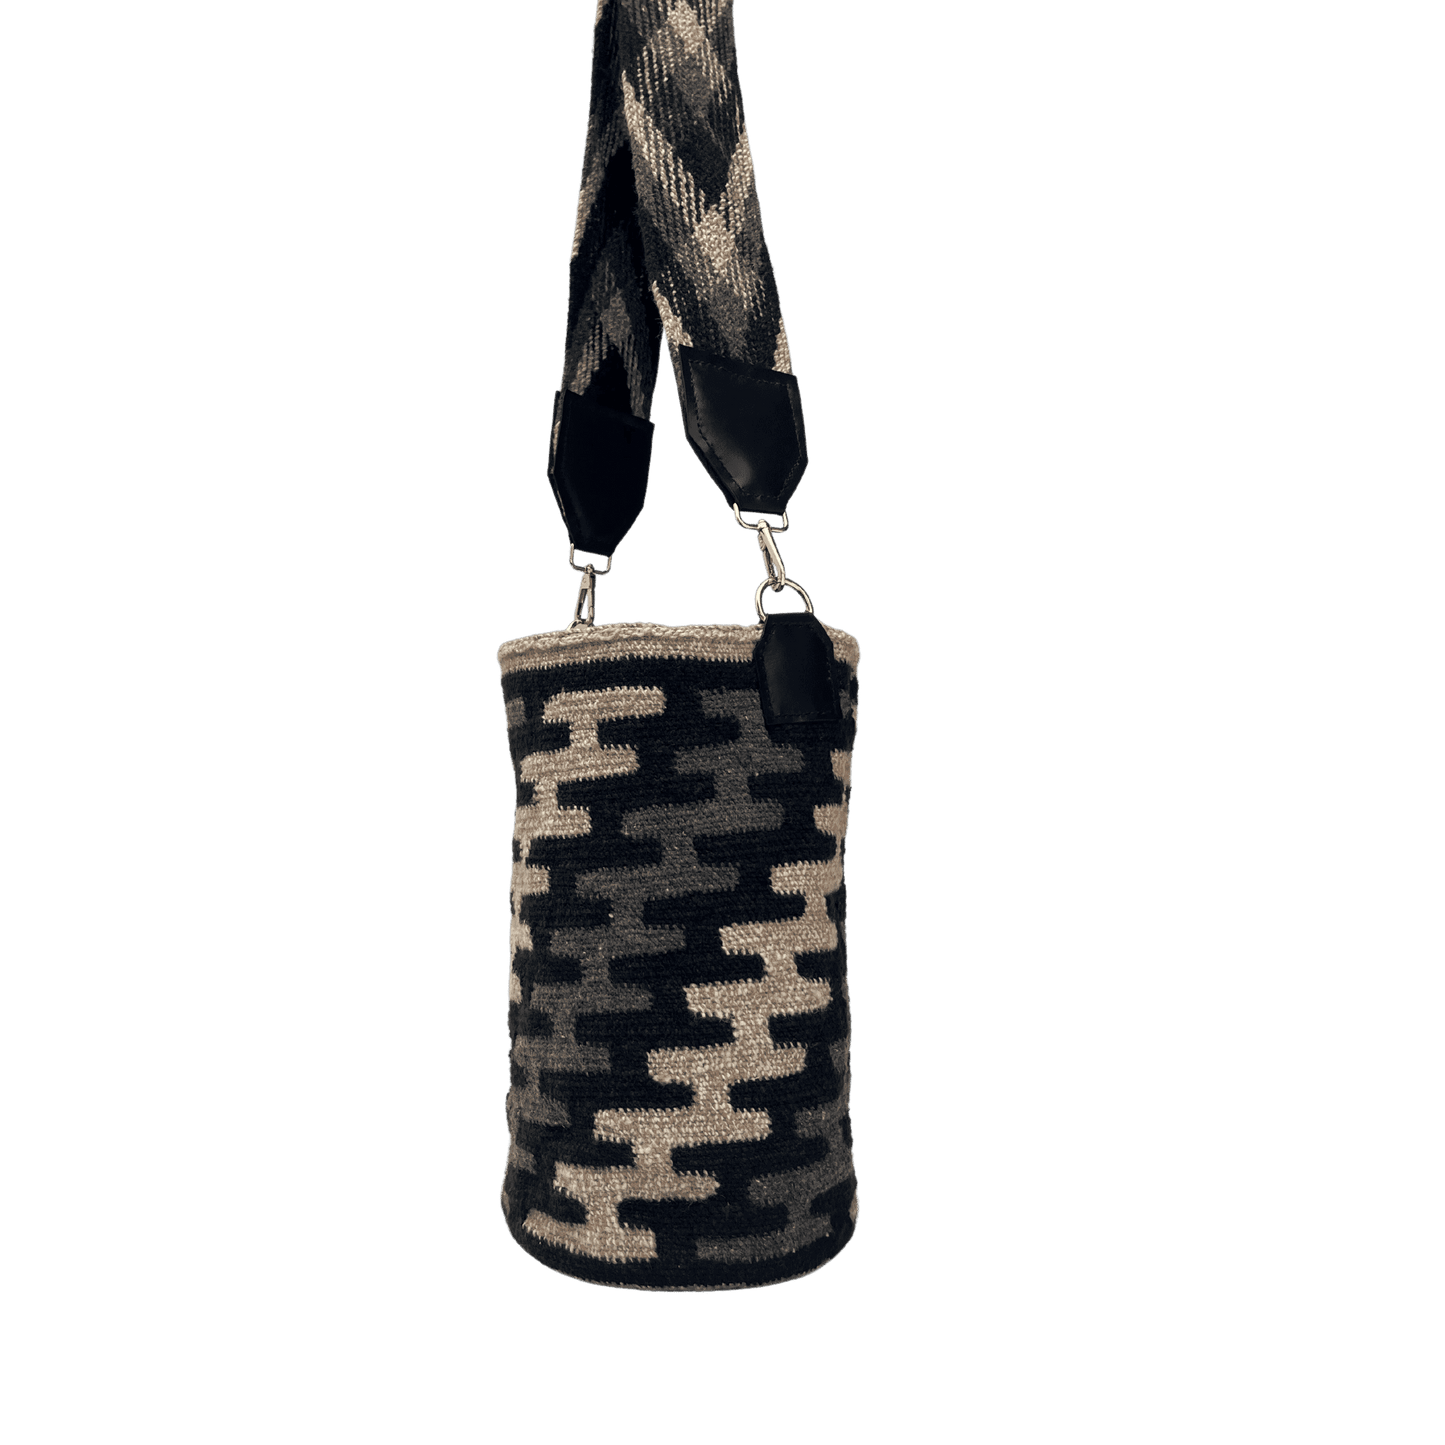 mochila arhuaca grande artesanal para mujer con correa con cuero y herrajes. colores negro, gris y café